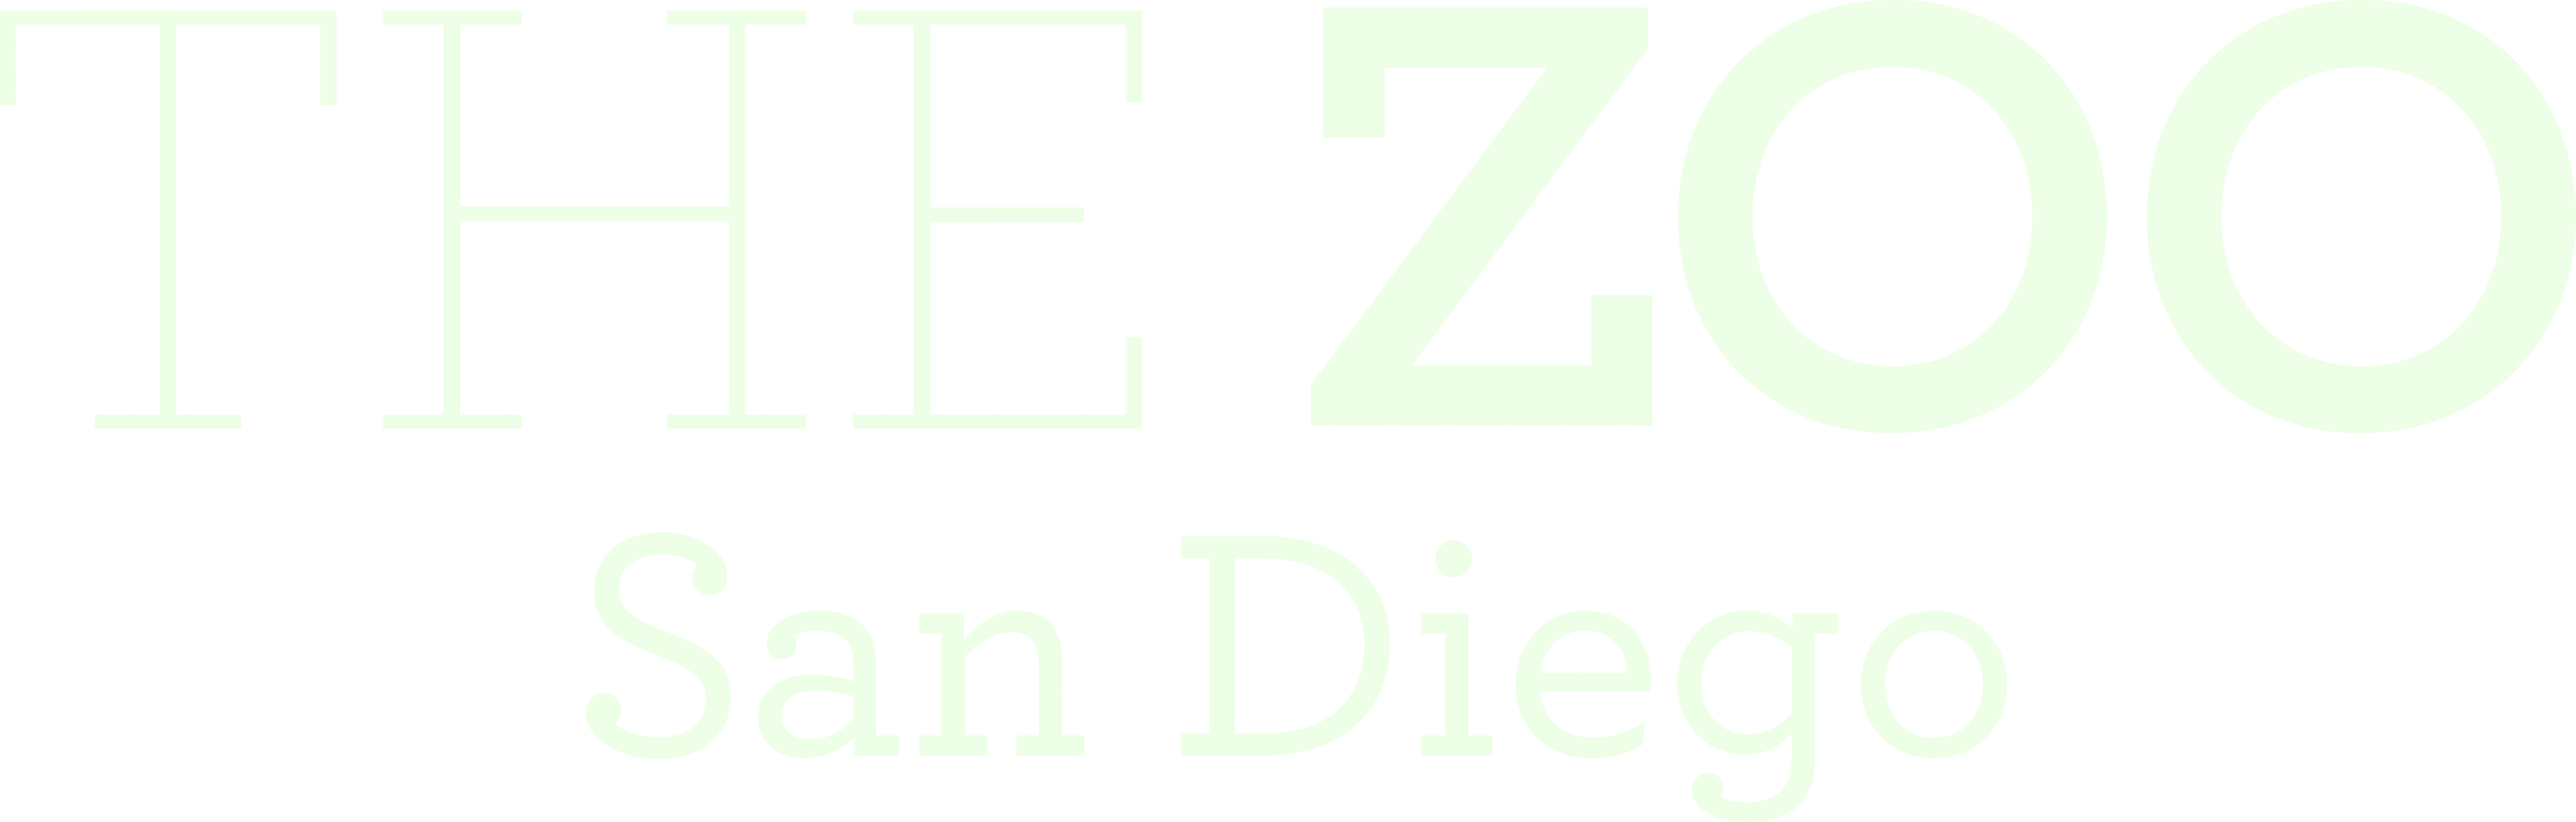 The Zoo: San Diego logo